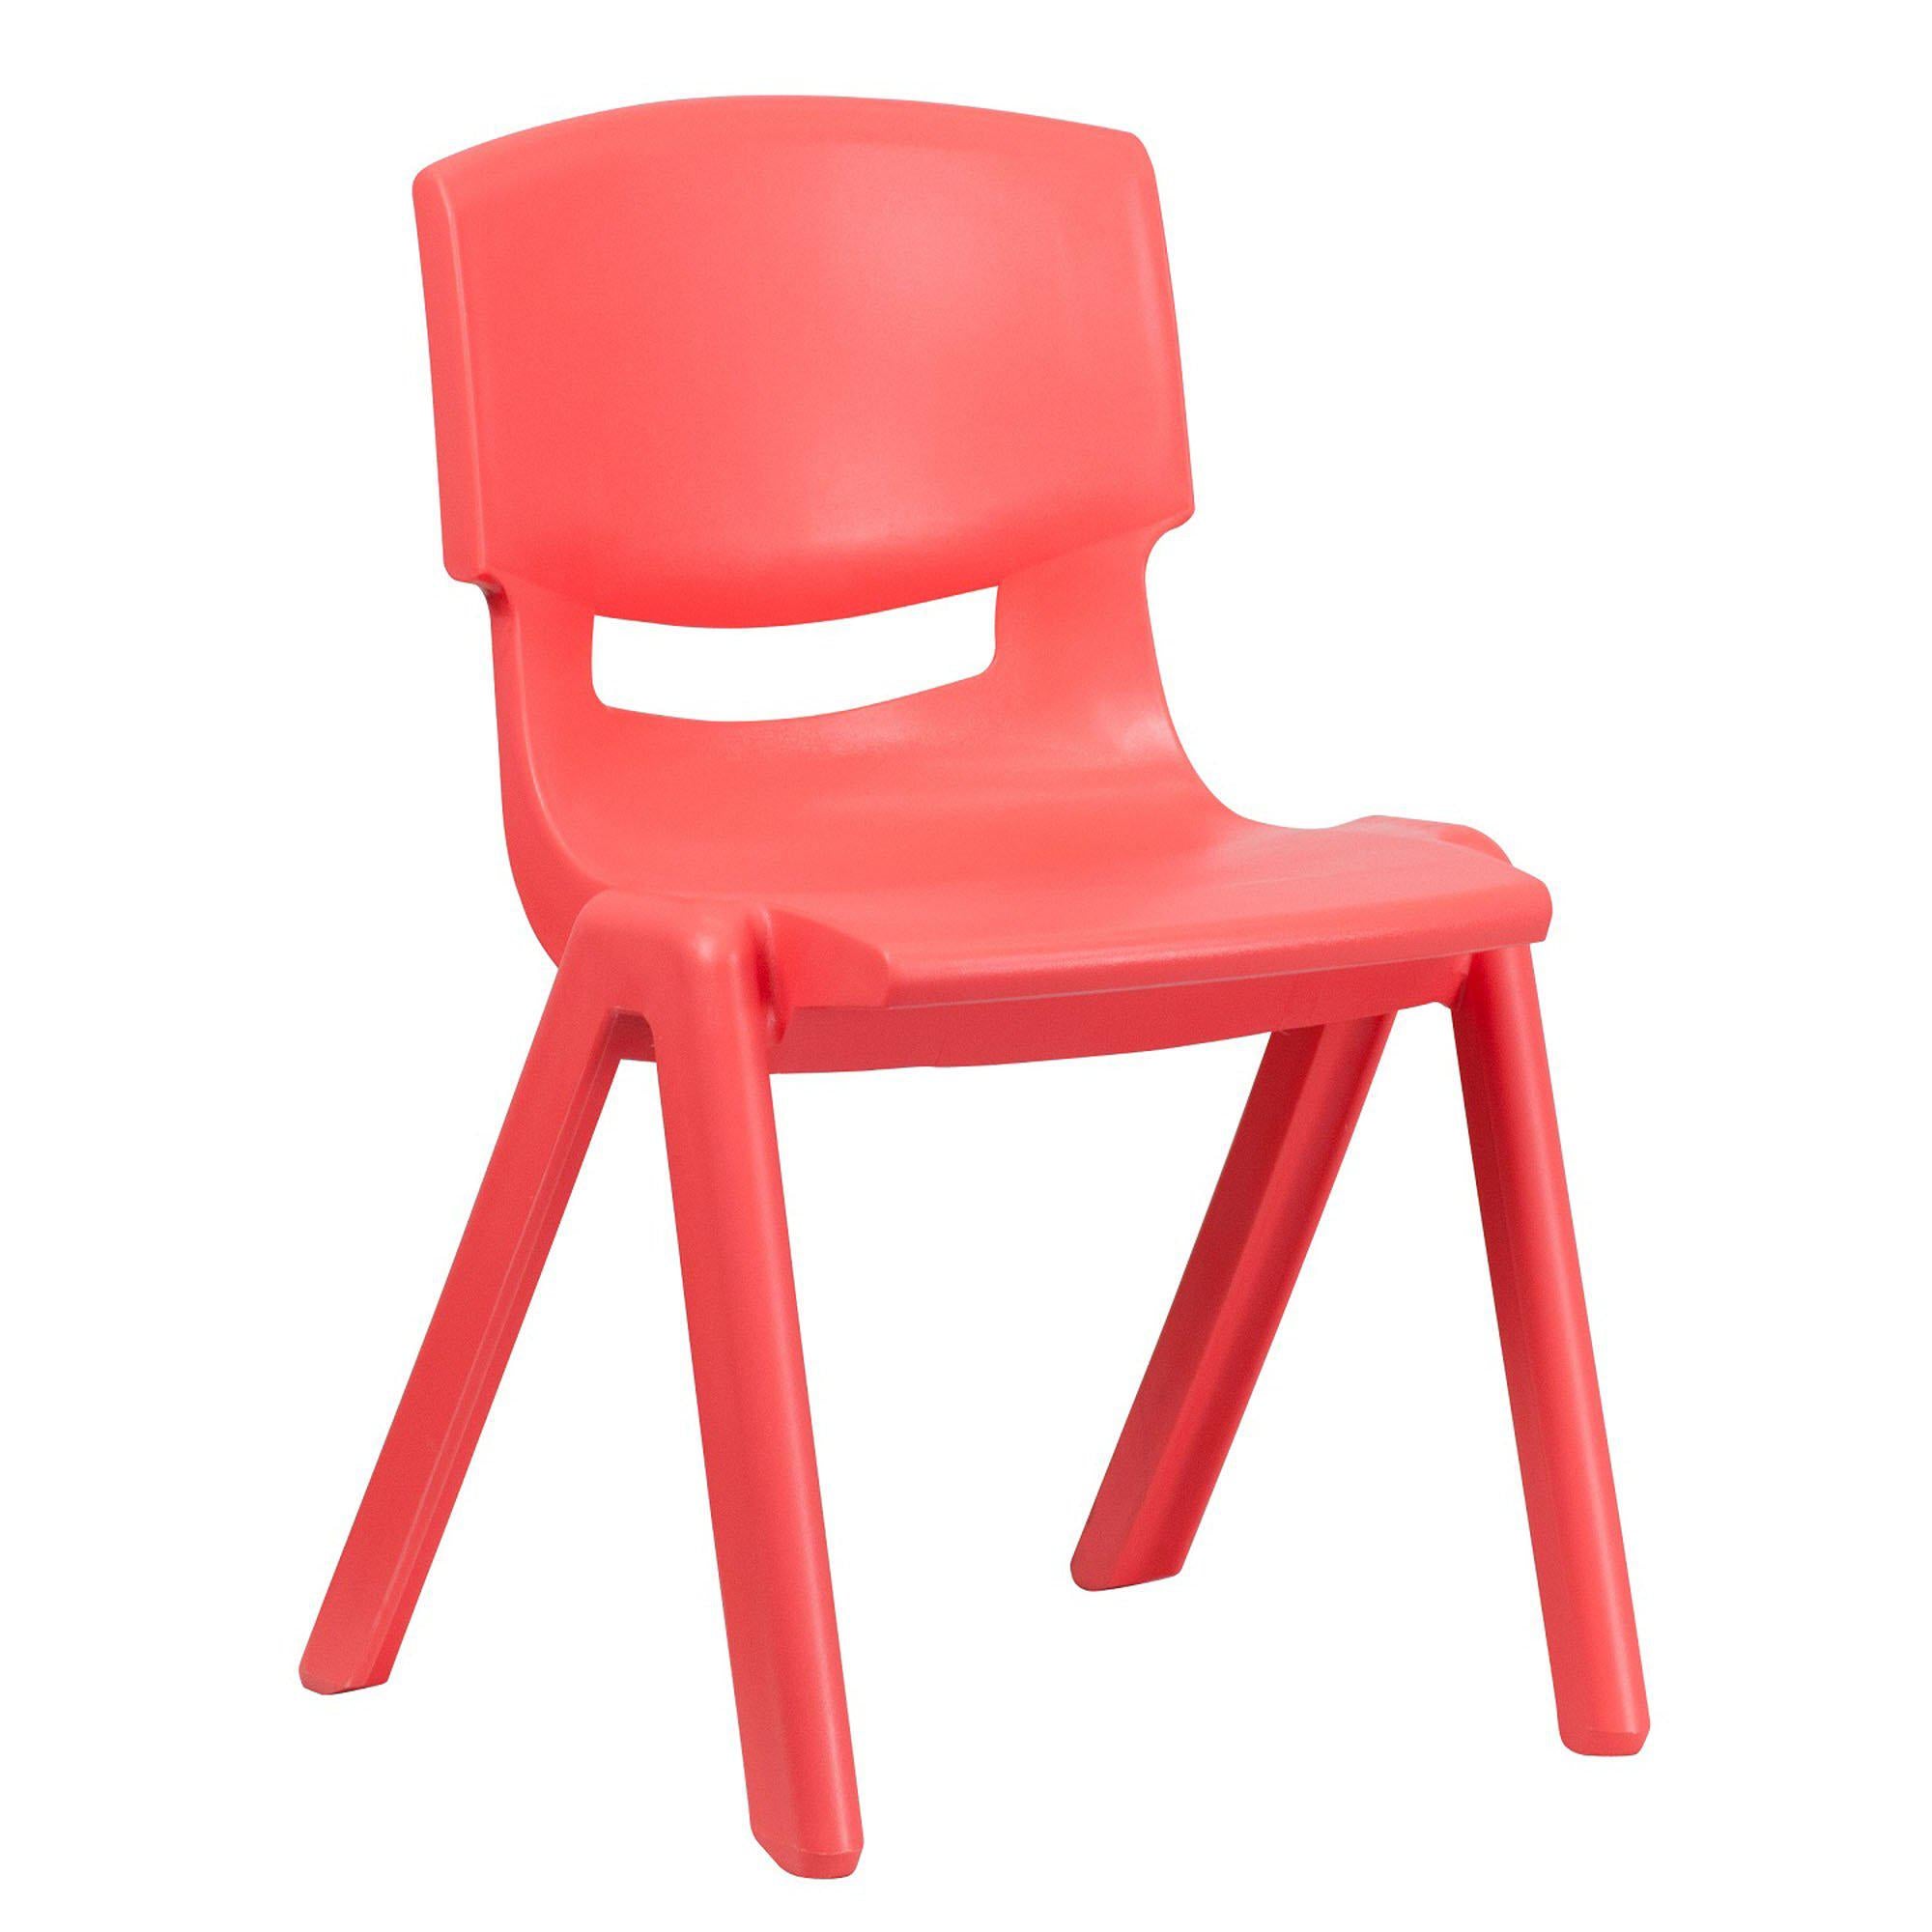 Nextgen Plastic School Stack Chair, 15-1/2" Seat Height